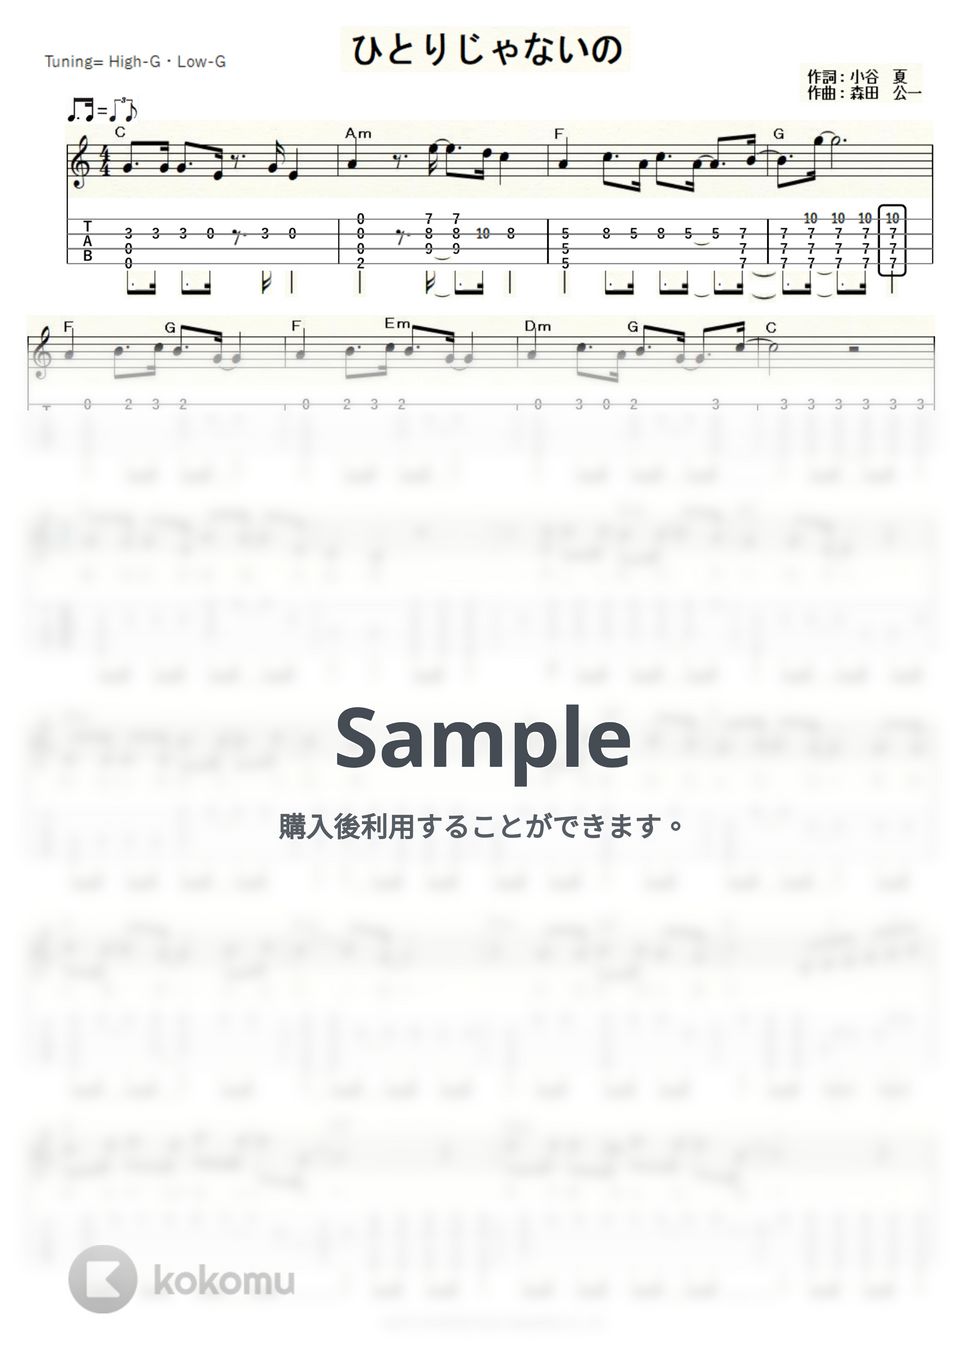 天地真理 - ひとりじゃないの (ｳｸﾚﾚｿﾛ/High-G・Low-G/中級) by ukulelepapa